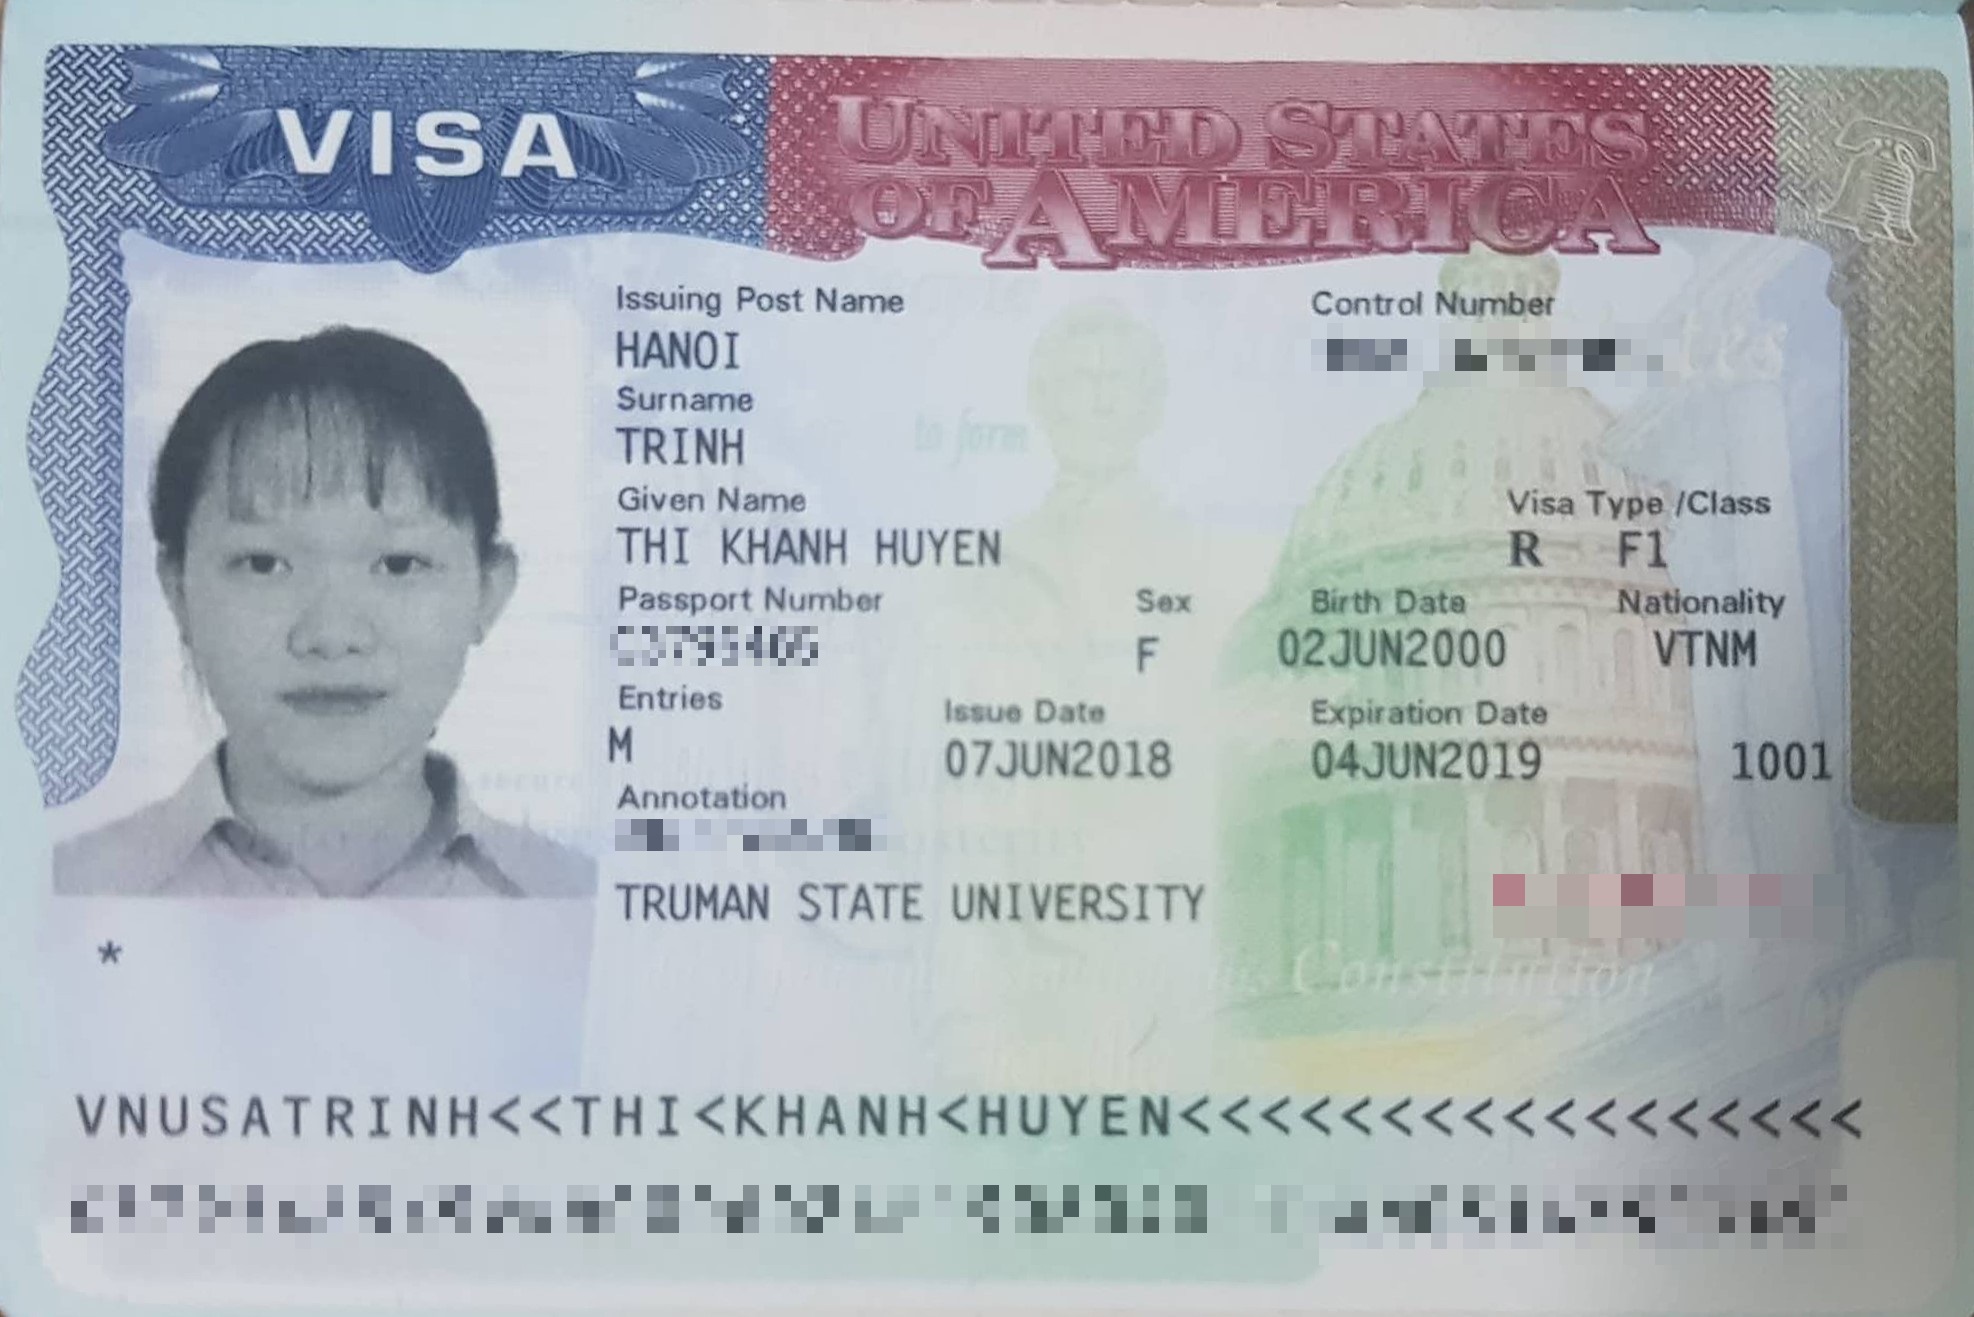 Chúc mừng bạn Trịnh Thị Khánh Huyền đã đậu visa du học Mỹ